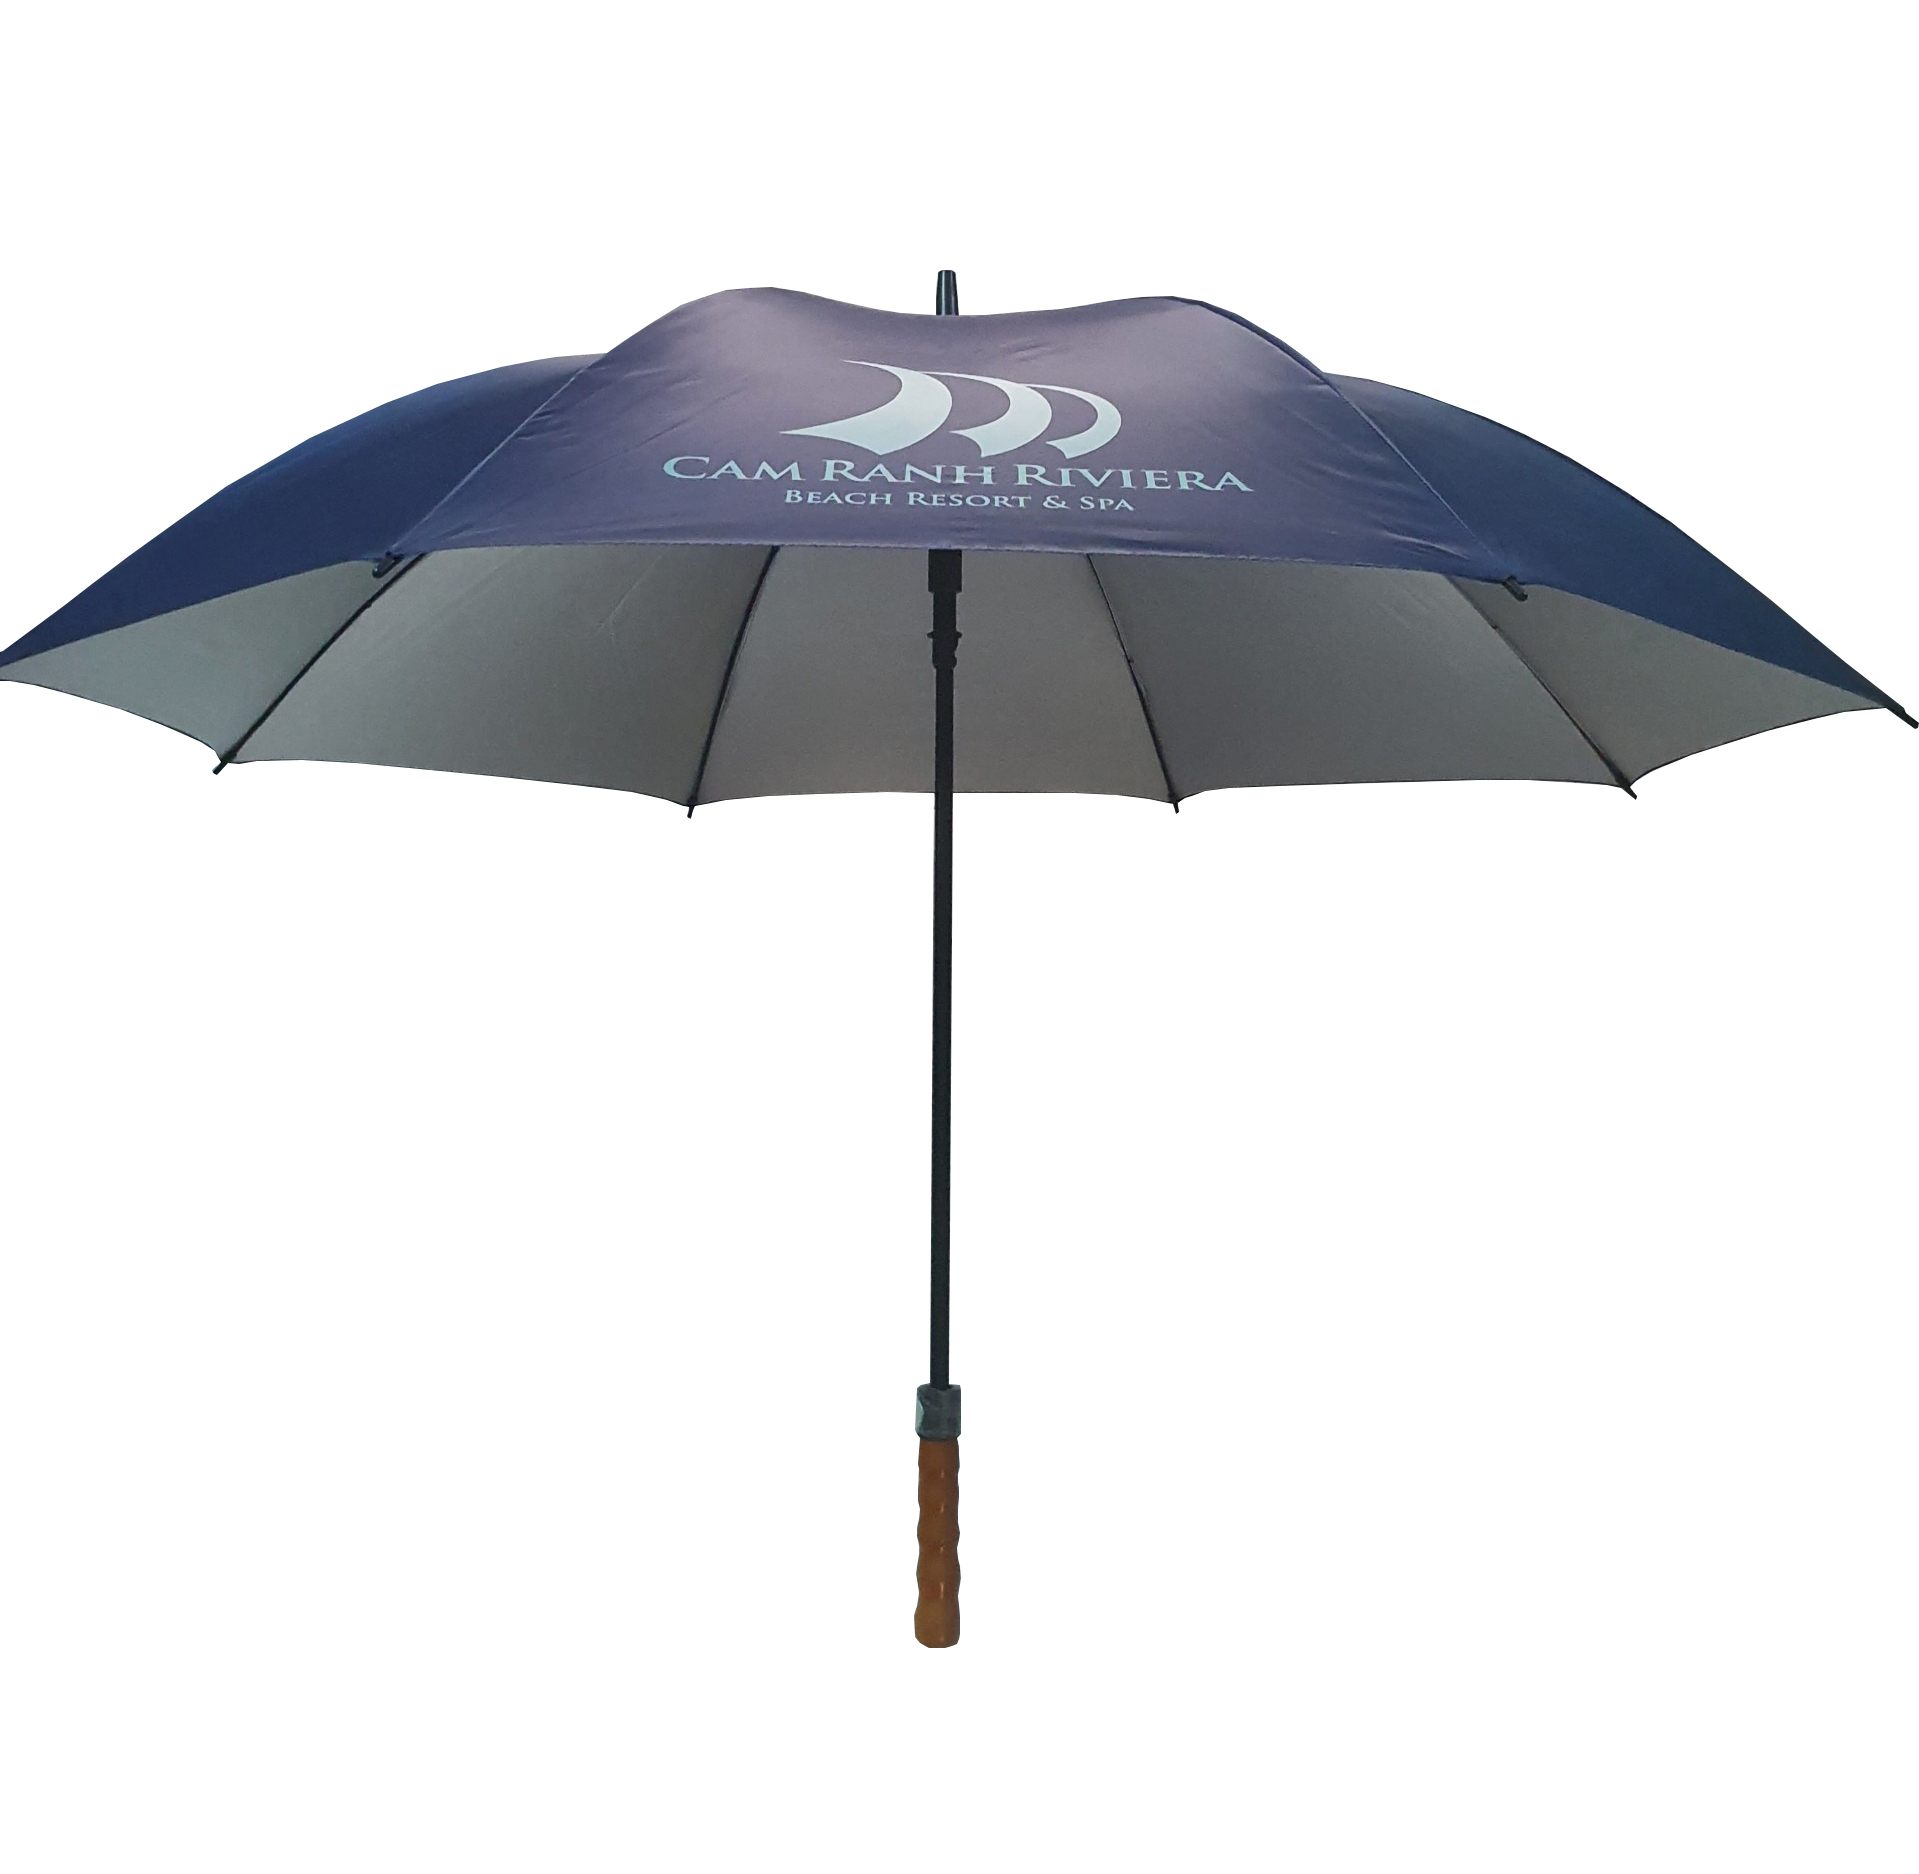 Chiếc ô dù cầm tay quảng cáo cán dài in logo của Cam Ranh Riviera Beach Resort & Spa